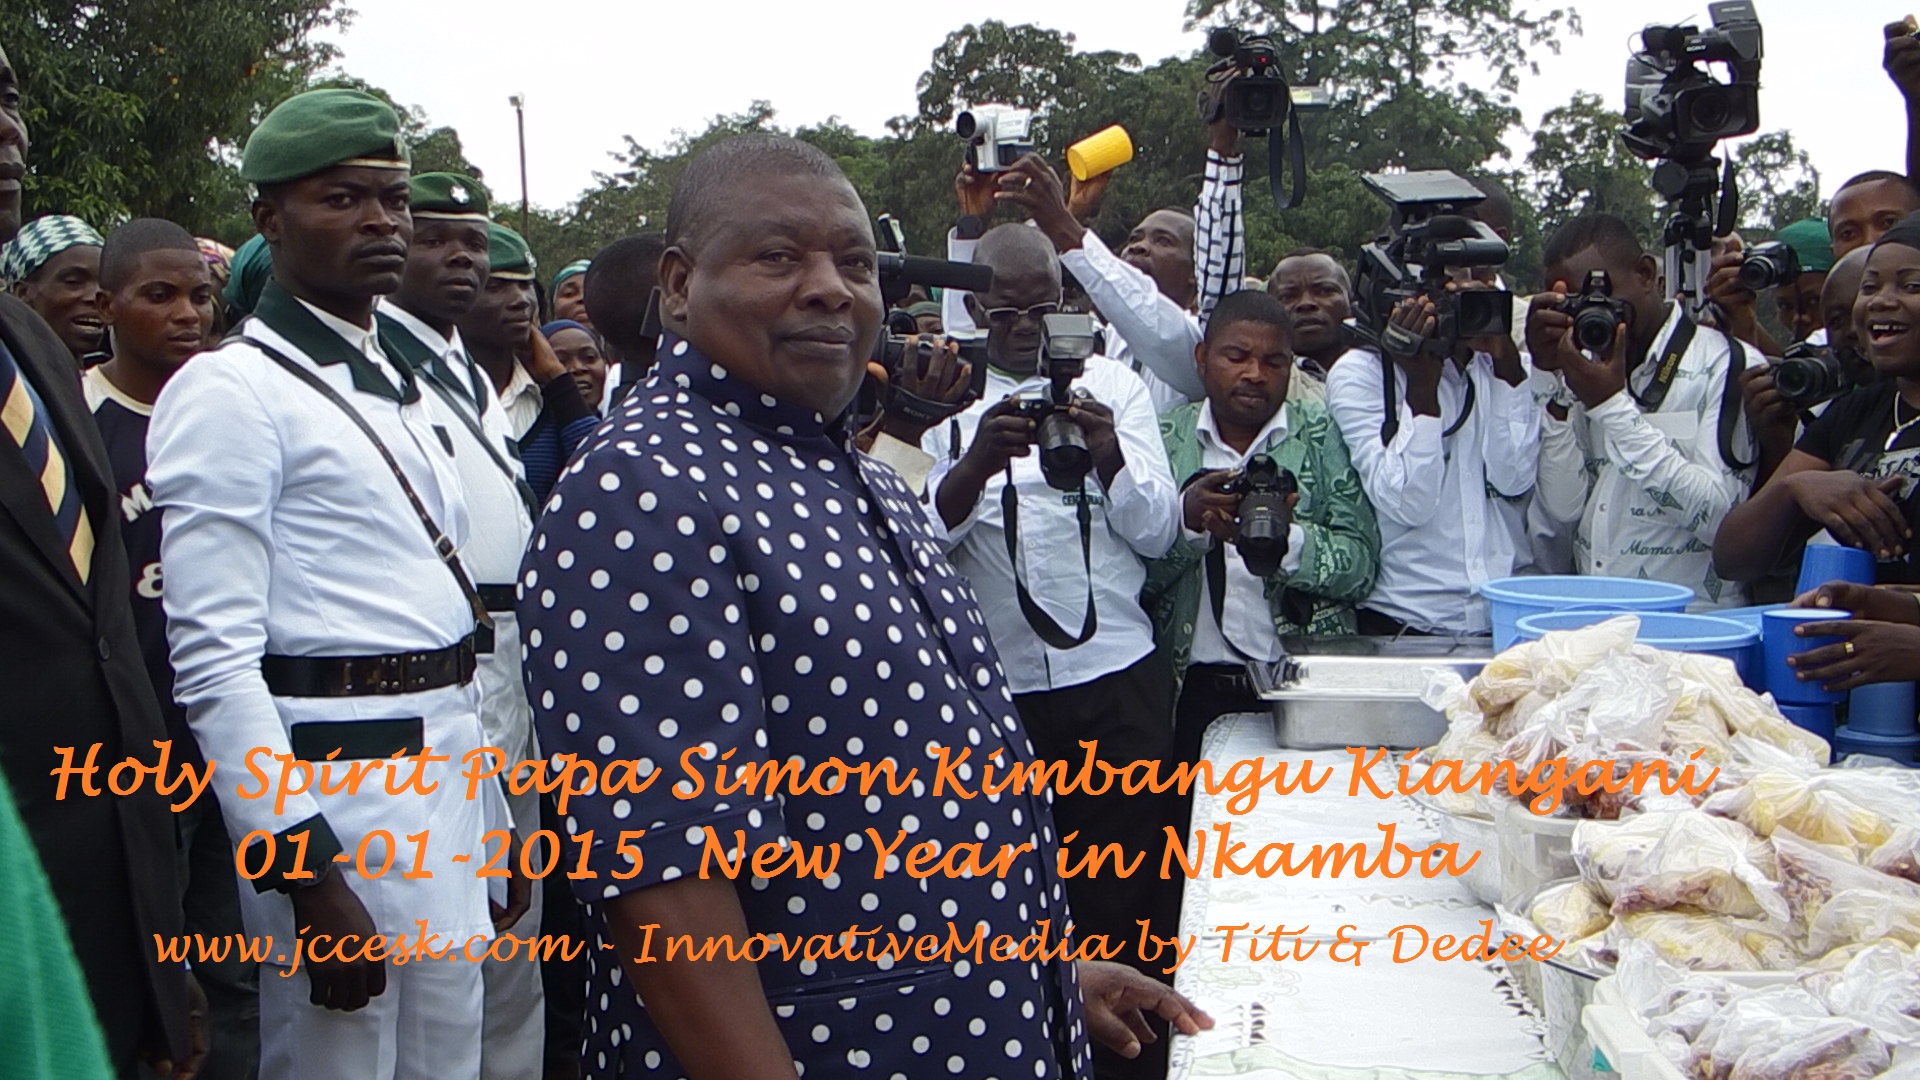 www.jccesk.com_New_Year_Nkamba_Bas-Congo_DRCon Nkamba New Jerusalem